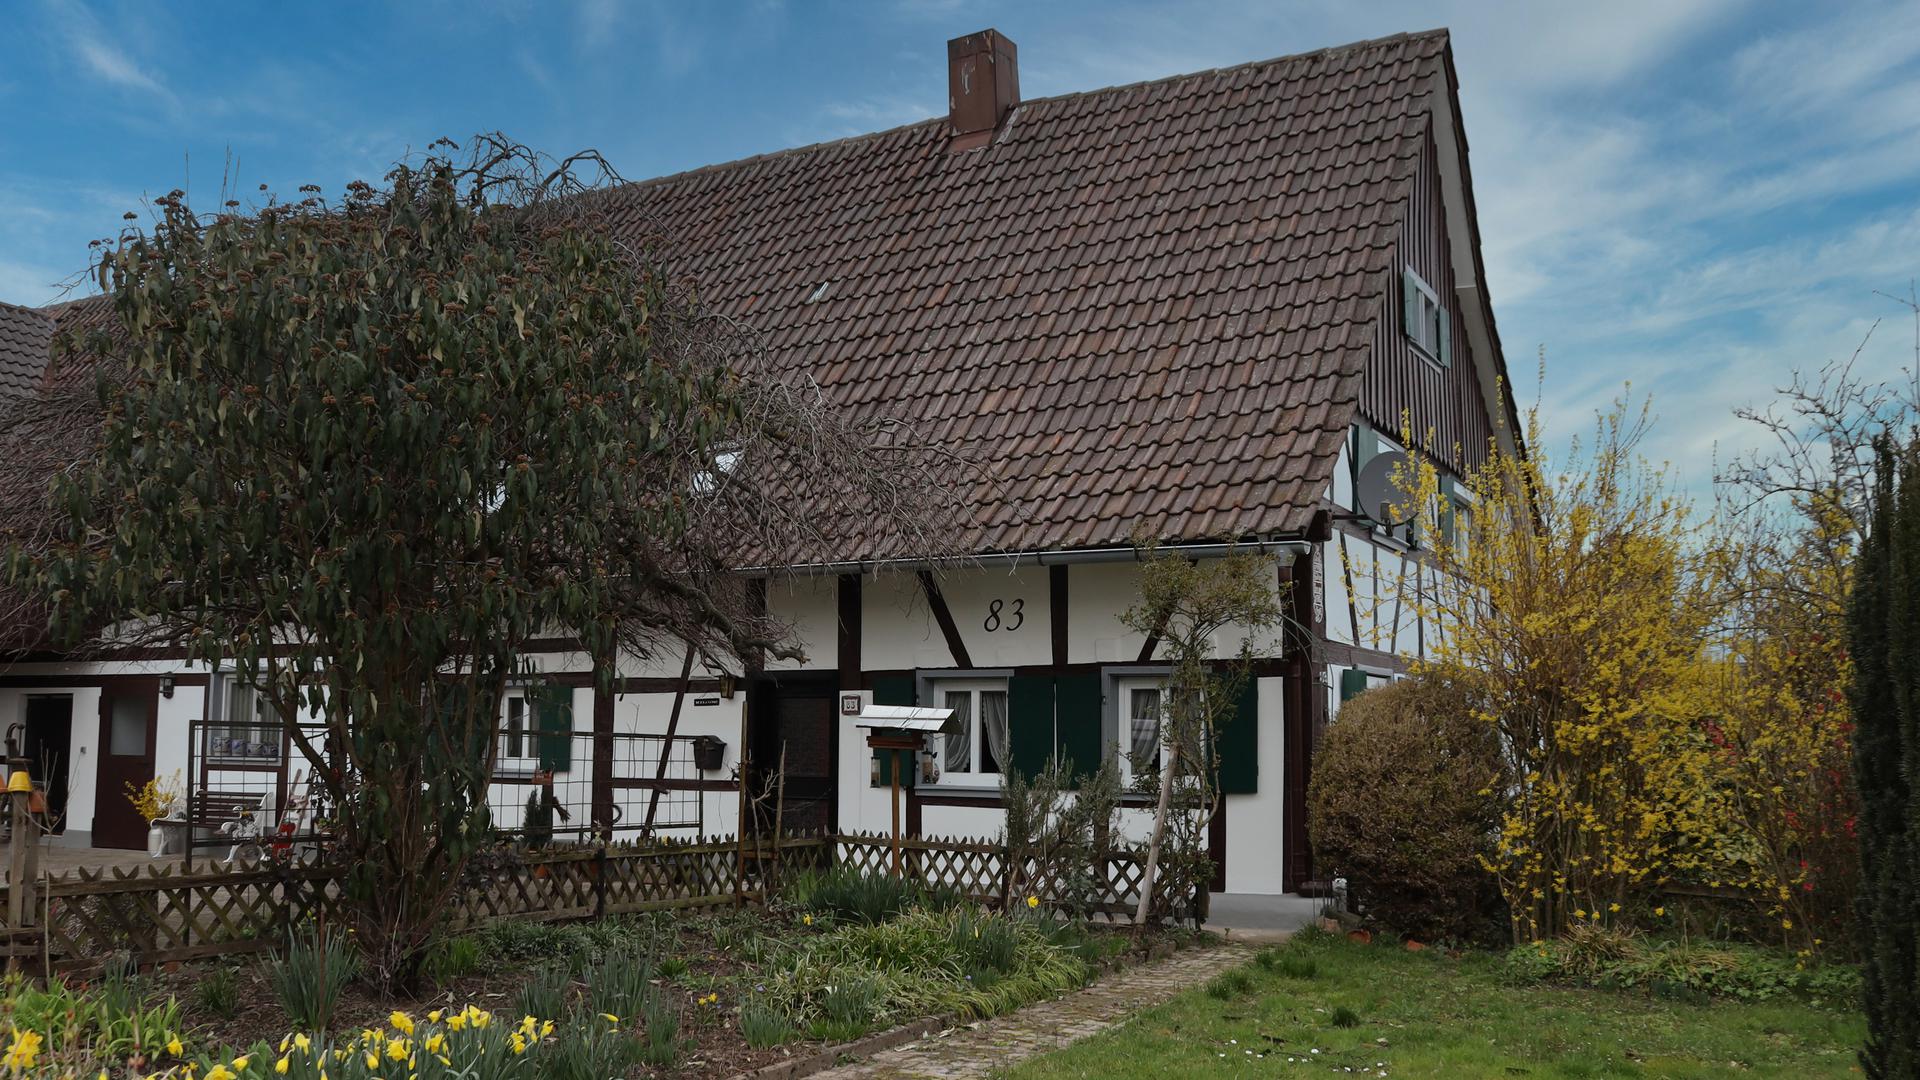 Alte Häuser Serie - s´Bihlers von 1785 im Großweierer Ortsteil Hesselbach